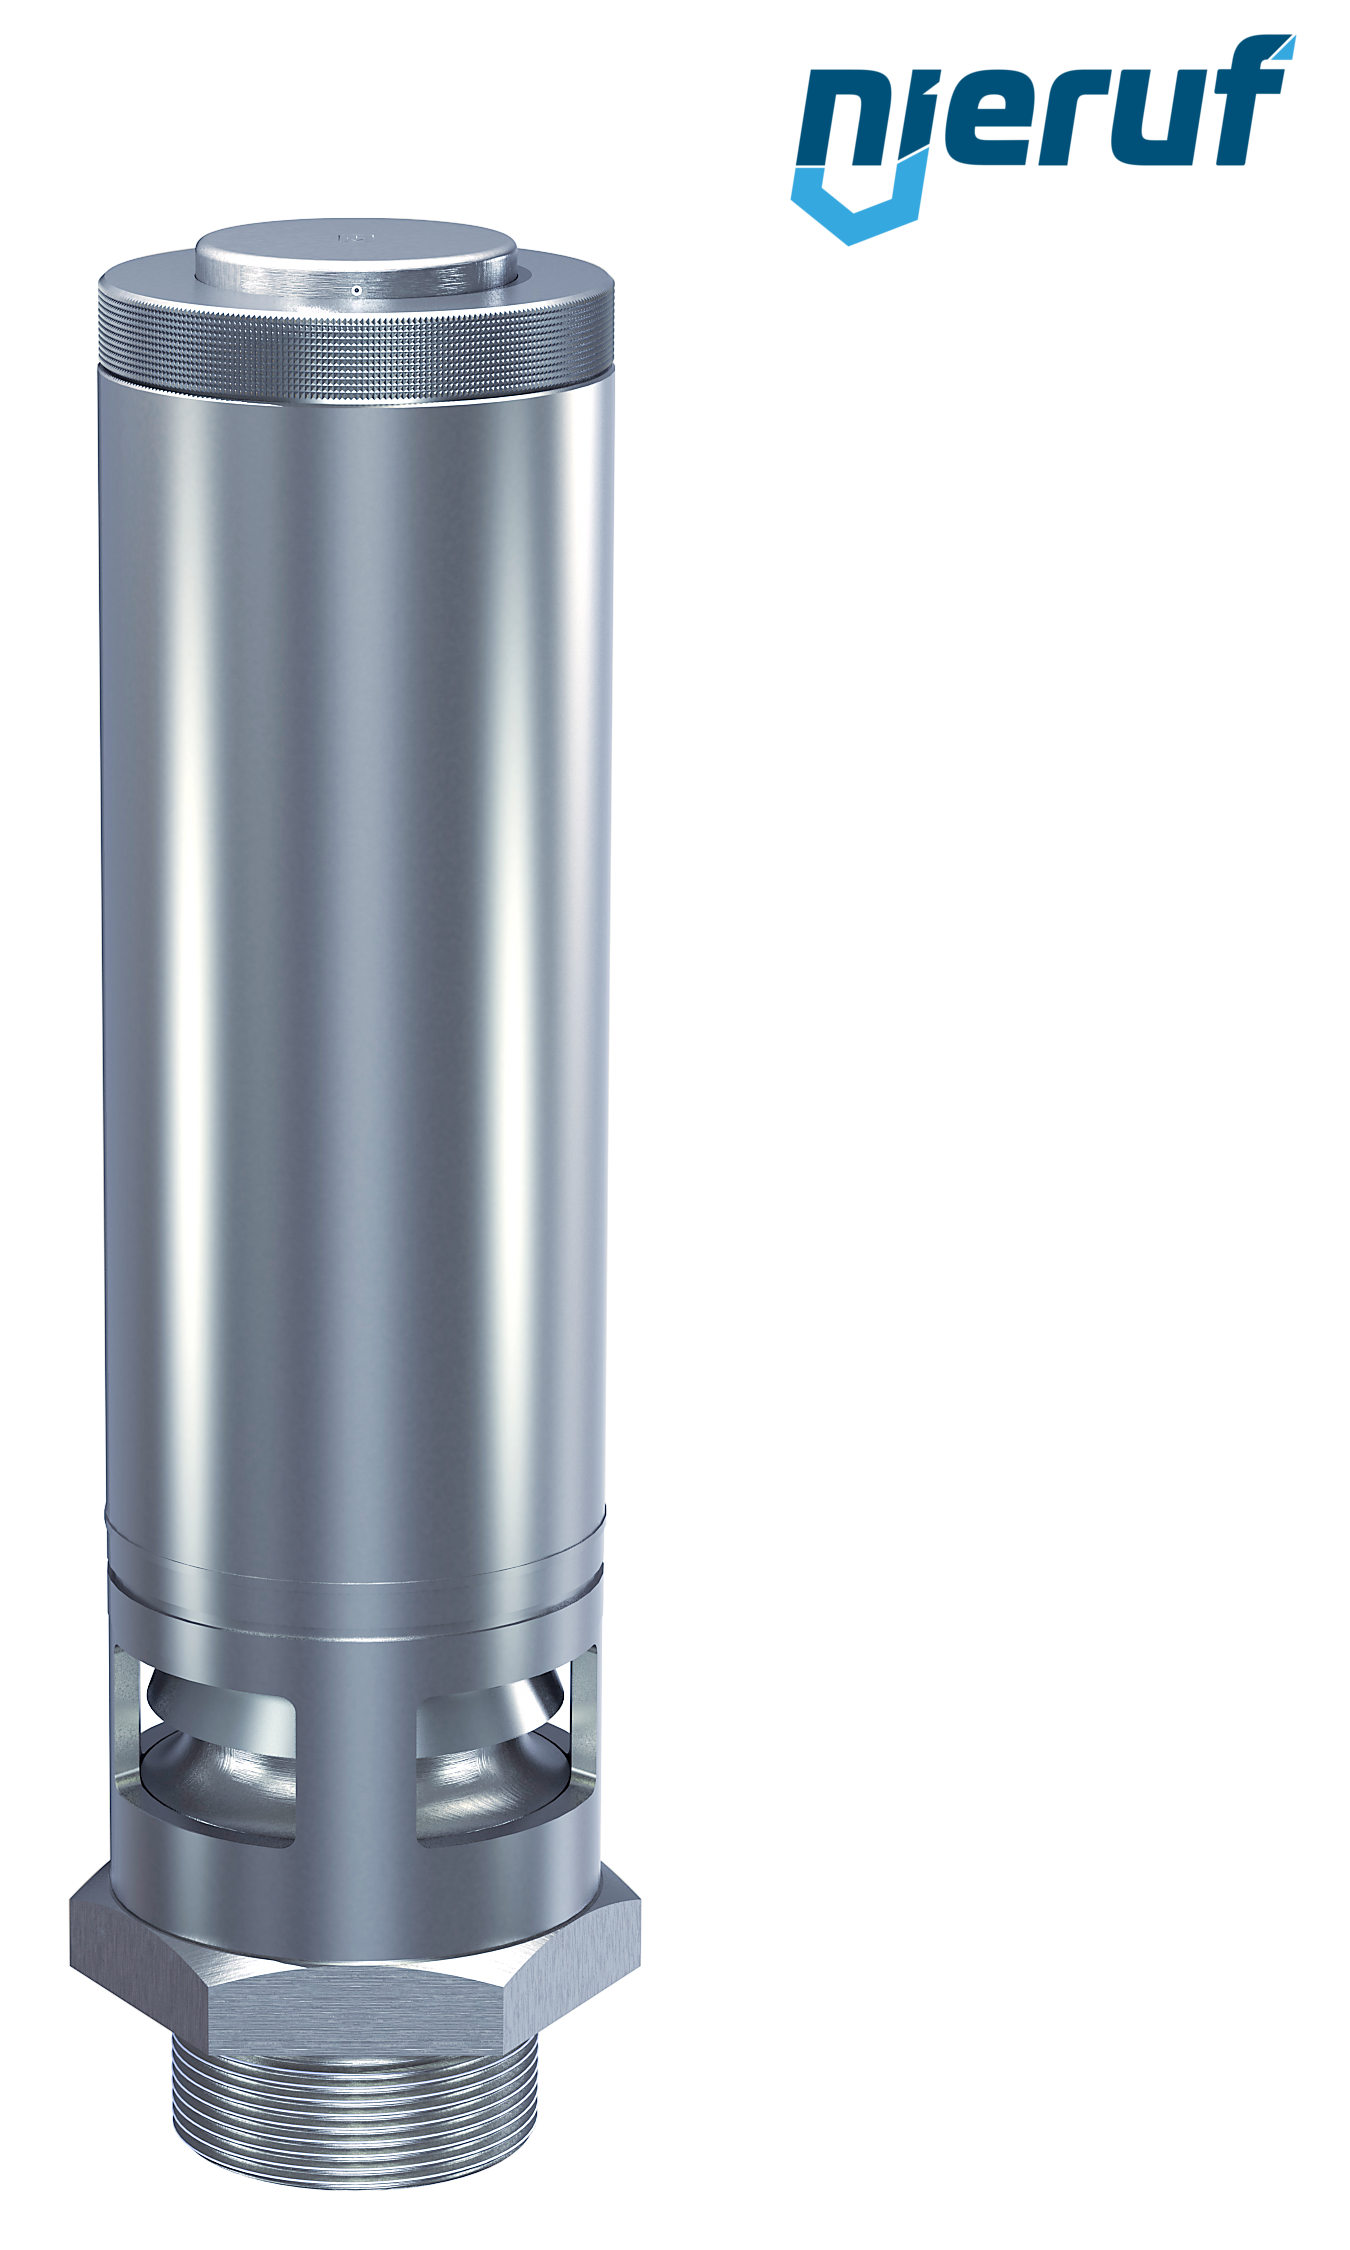 valvola di sicurezza 1 1/2" SV02 per aria compressa, acciaio inox FKM